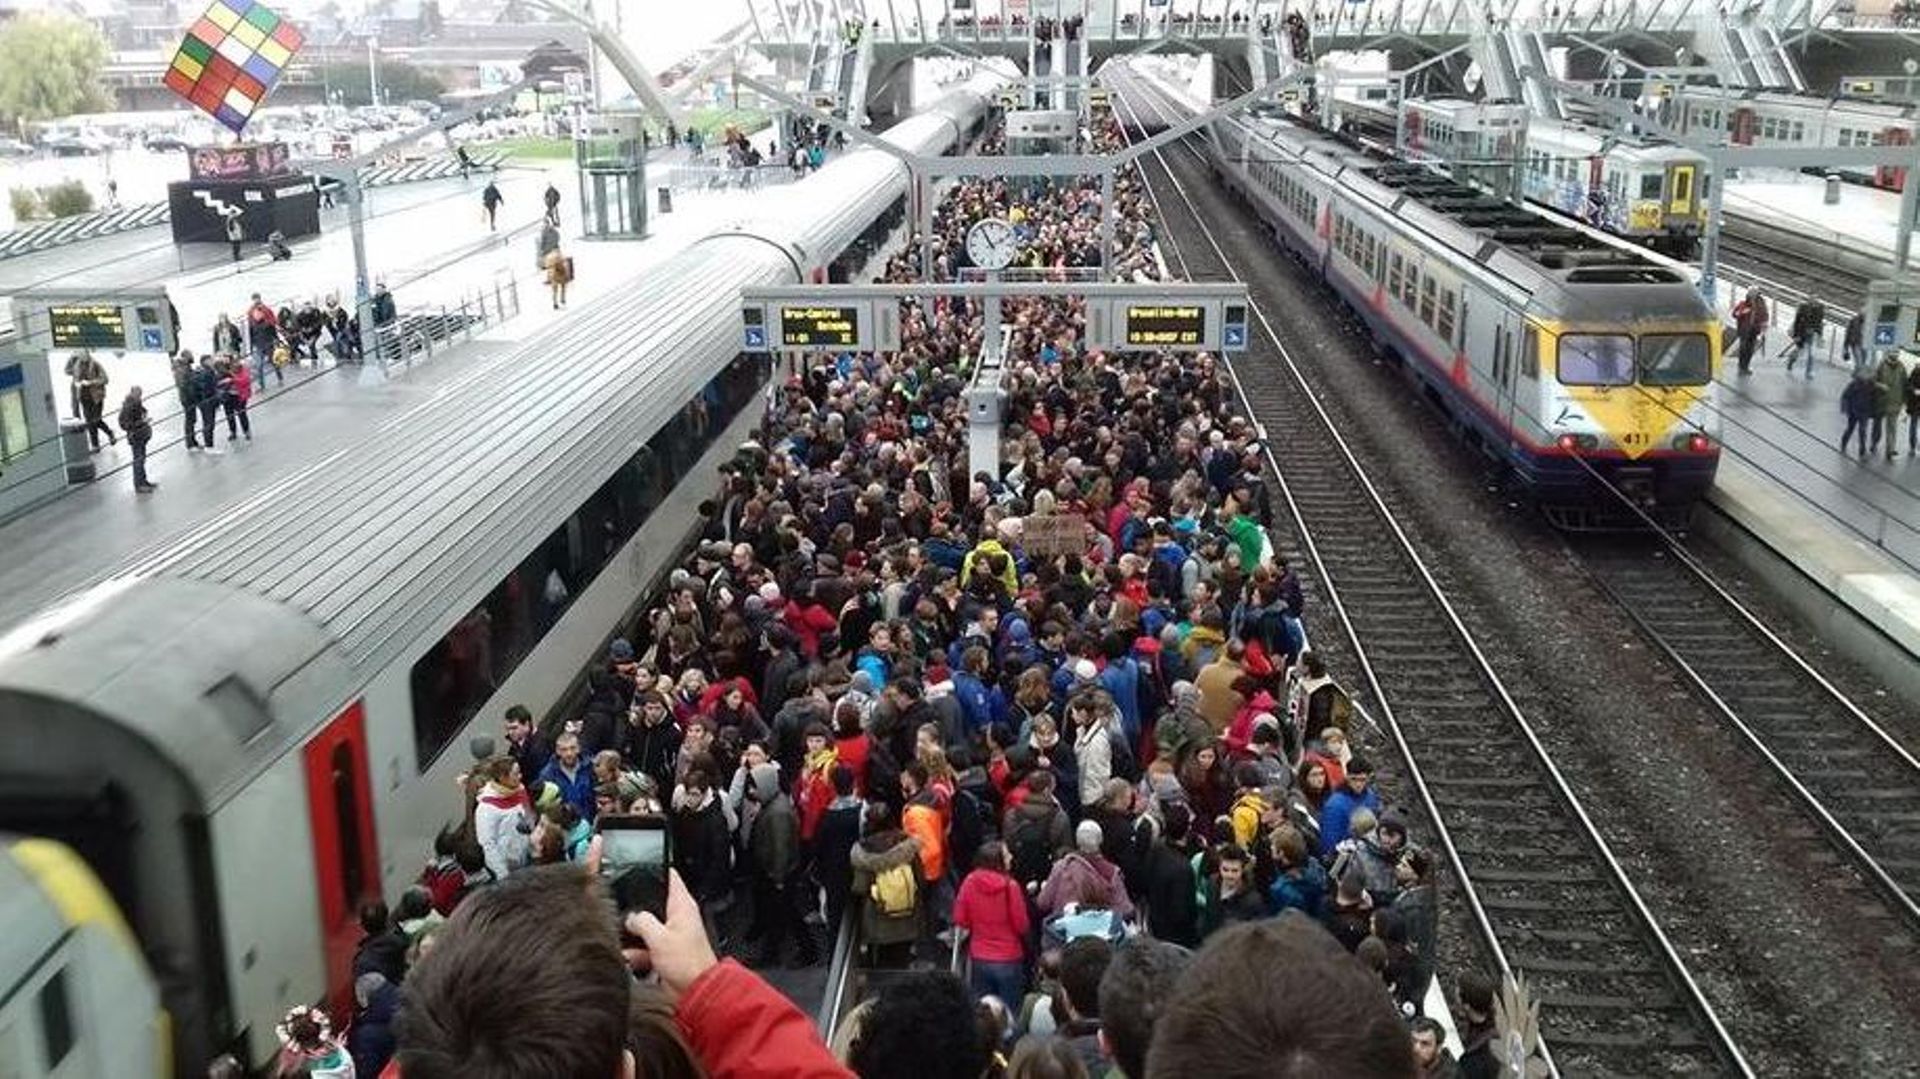 "Gestion catastrophique": la SNCB accusée de ne pas avoir prévu assez de trains en vue de la Marche pour le climat